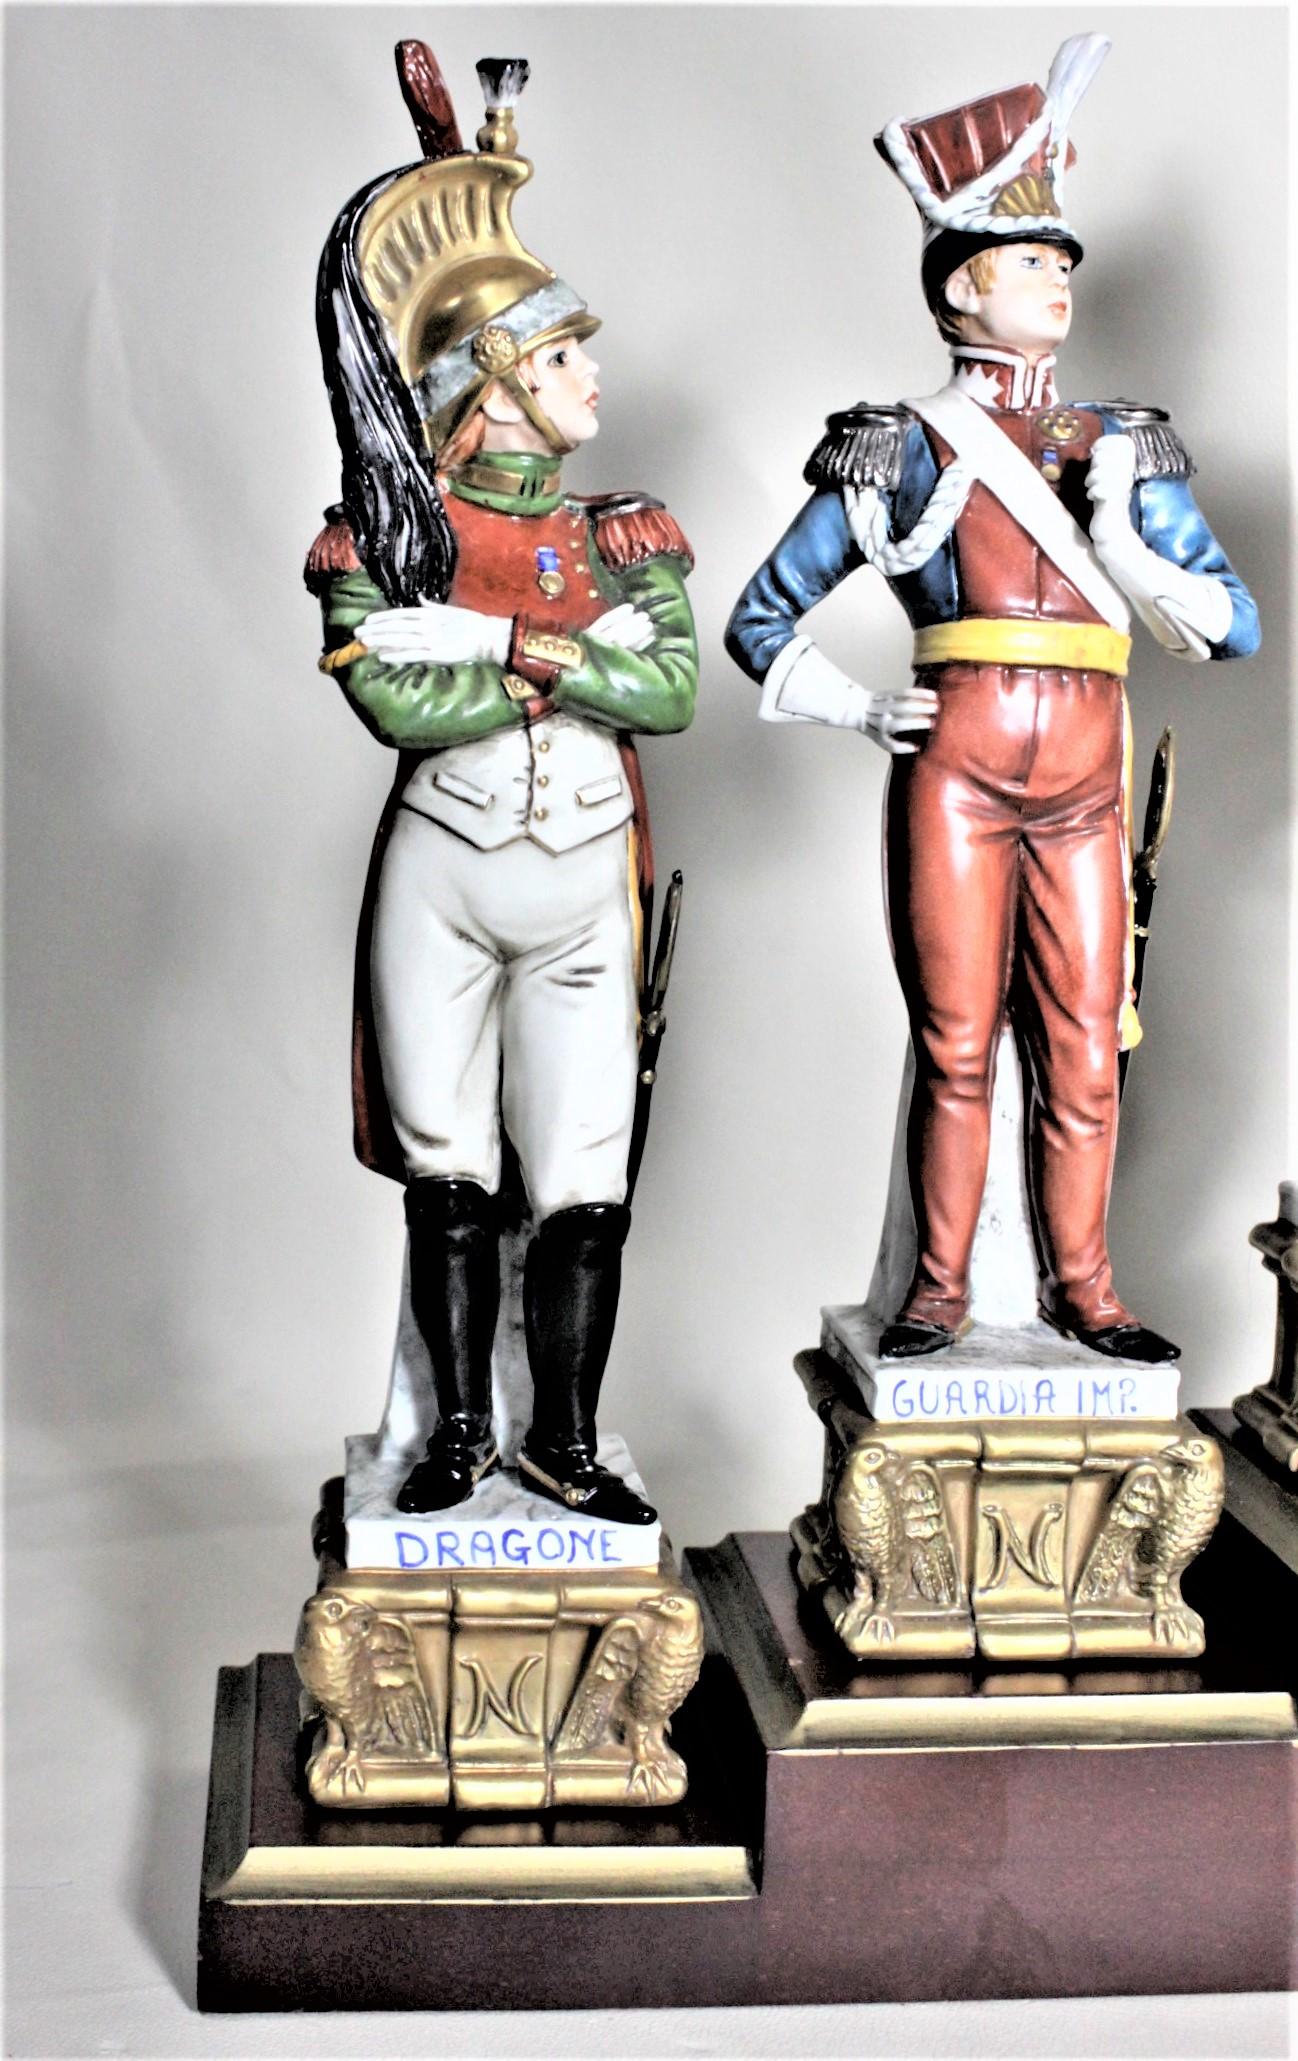 Dieser Satz von acht Porzellanfiguren wurde von der italienischen Manufaktur Capodimonte um 1980 im Stil der Renaissance hergestellt. Sieben der Figuren stellen berühmte militärische Persönlichkeiten dar und sind sehr detailliert von Hand bemalt. Es